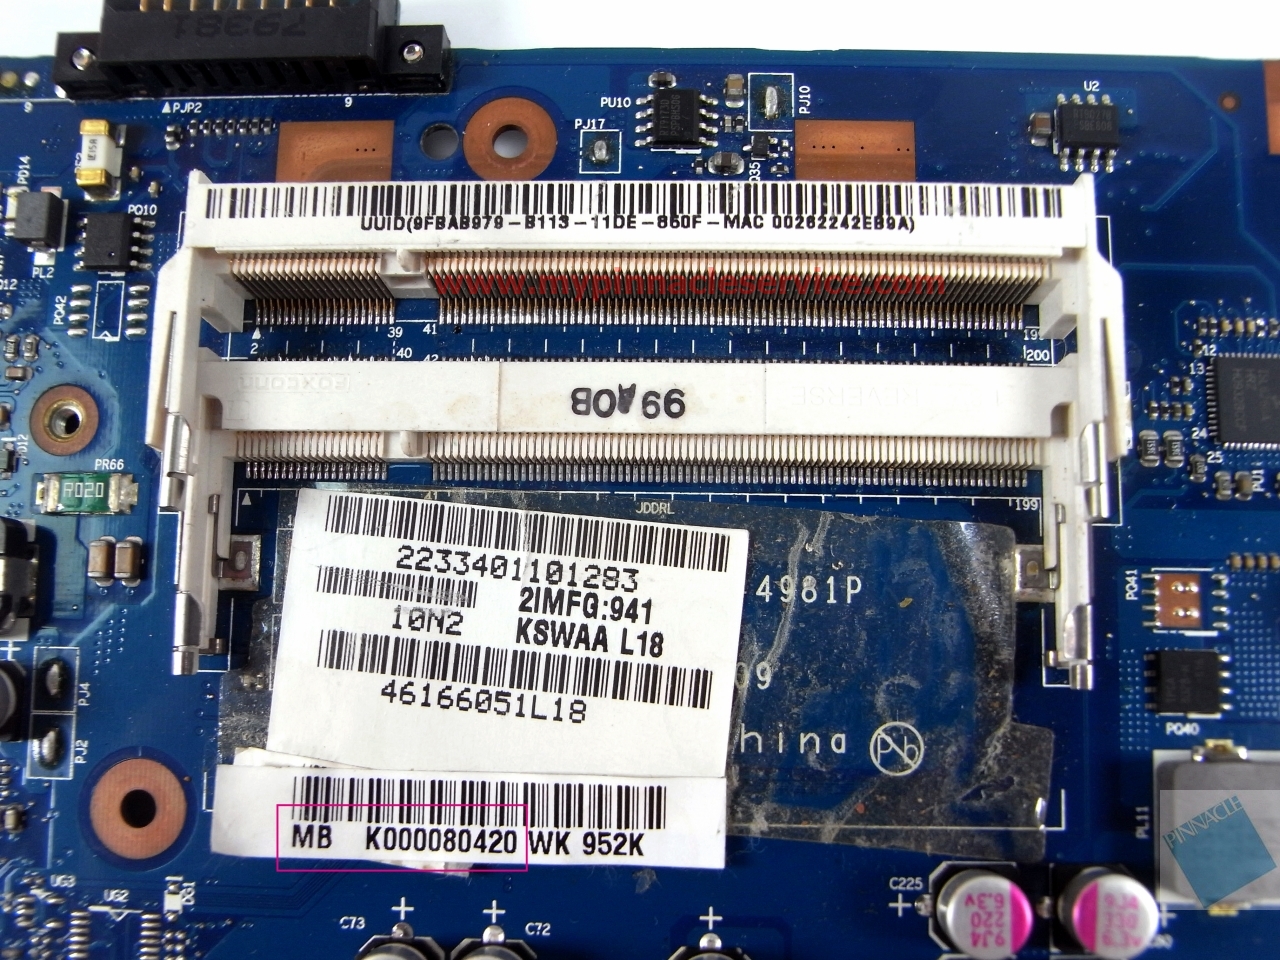 k000080420-motherboard-for-toshiba-satellite-l500-l505-kswaa-la-4981p-46166051l18-rimg0020.jpg